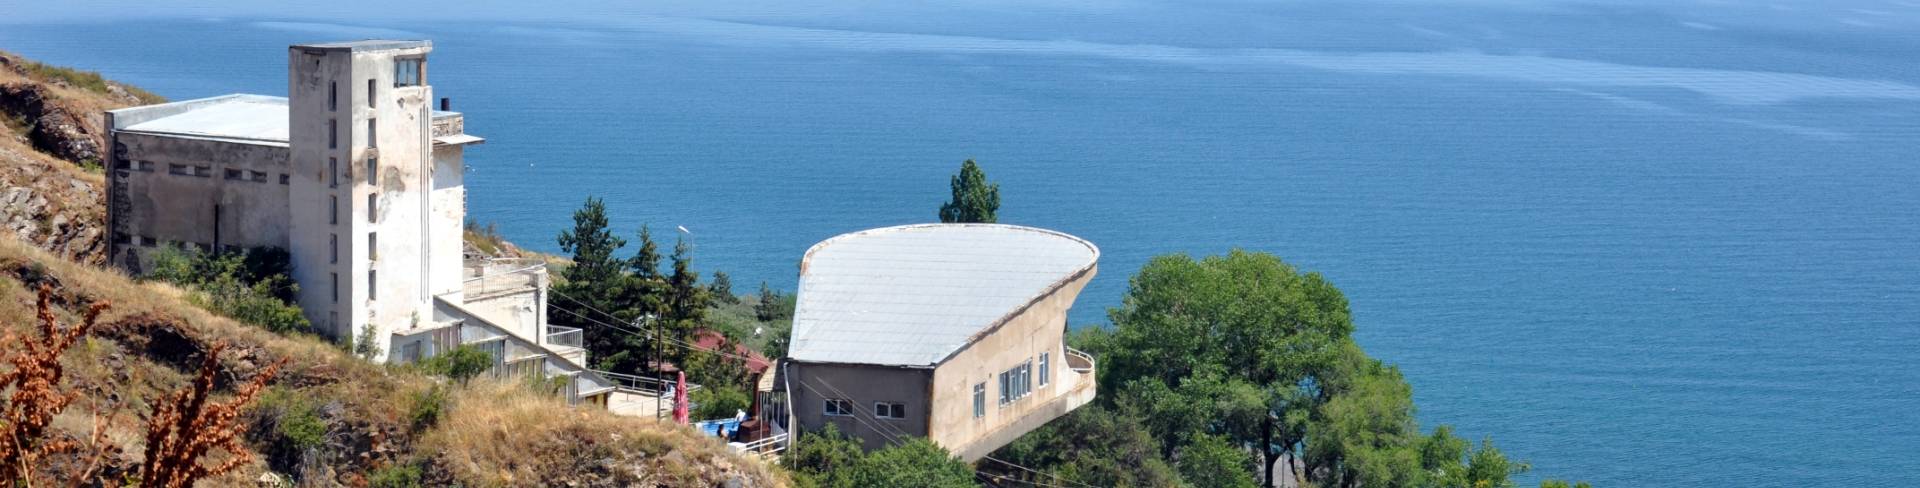 Озеро Севан в Армении